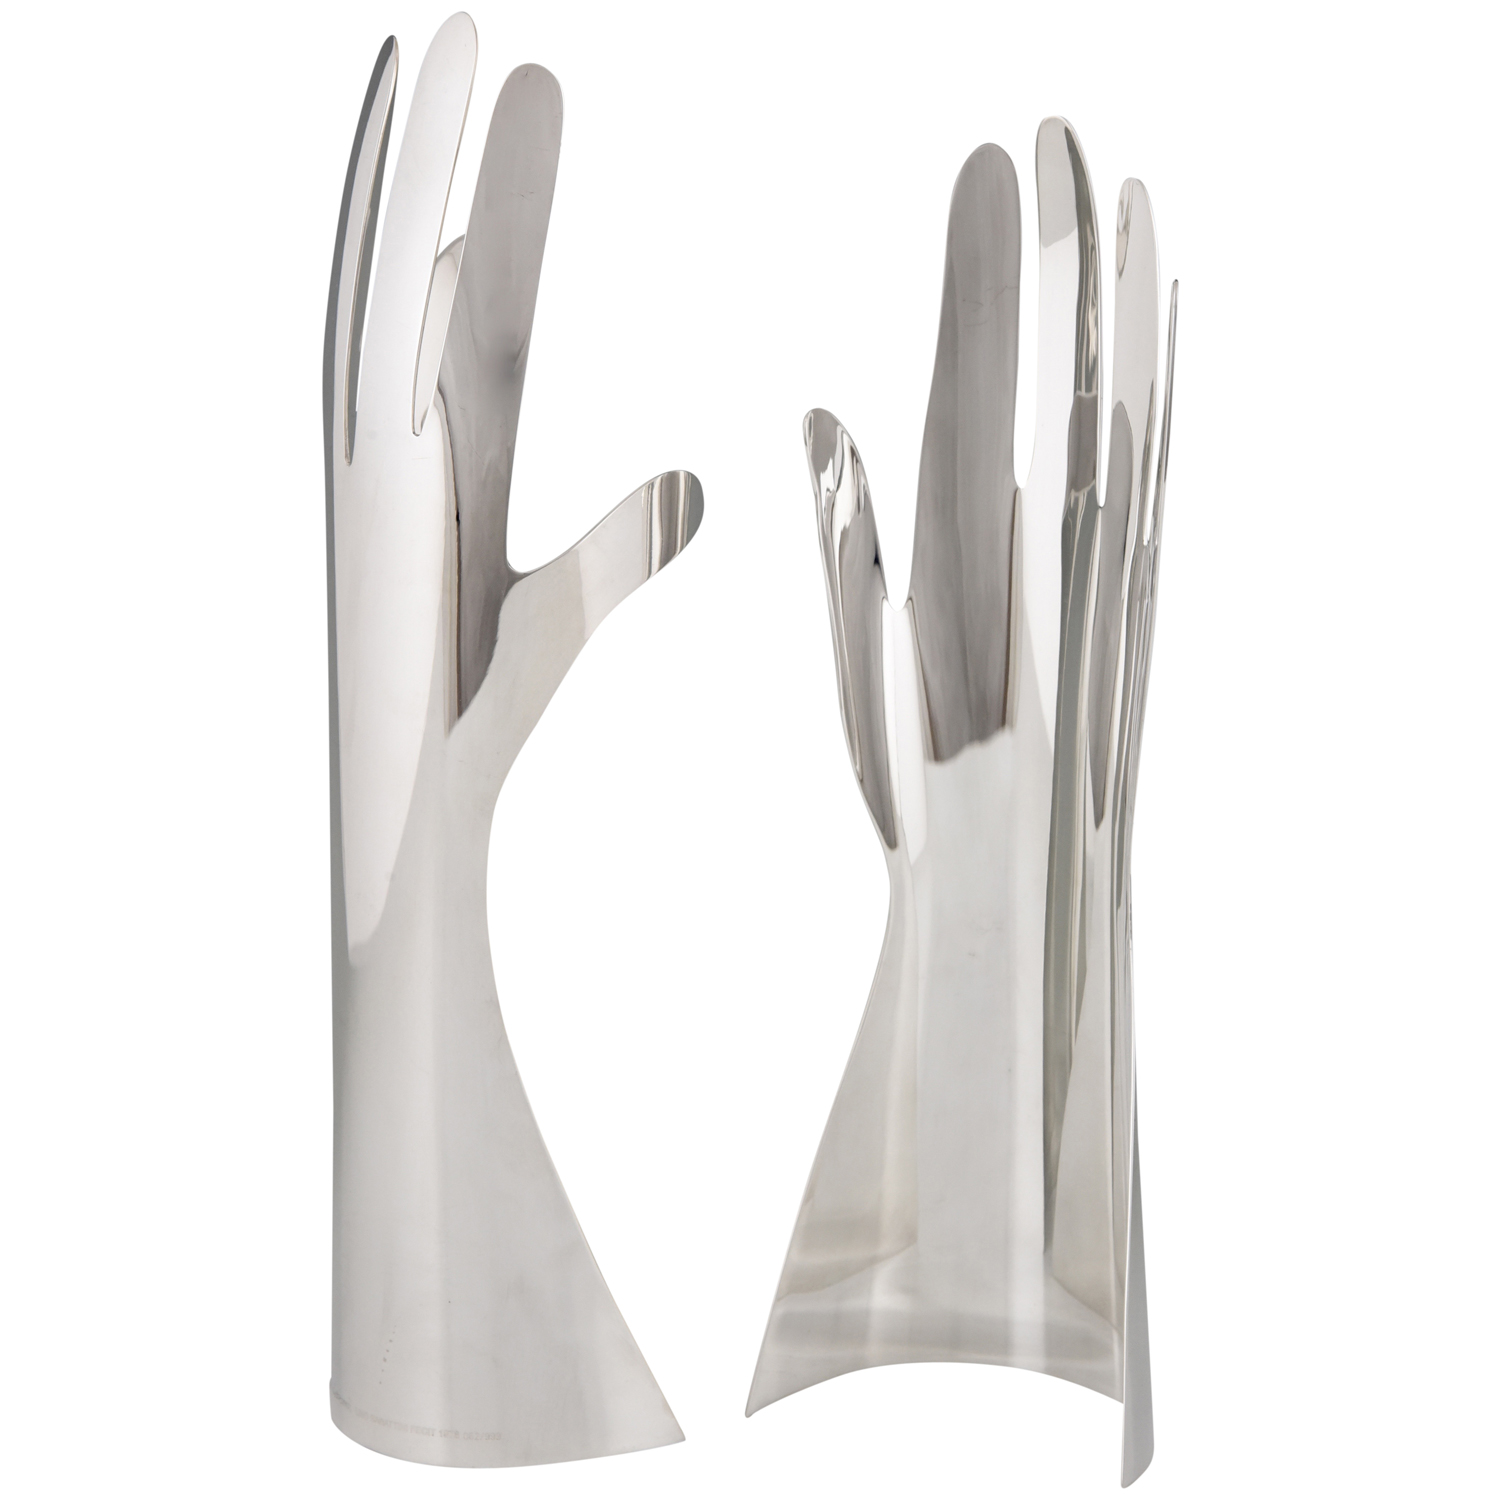 Le Mani, deux mains sculpture en metal argenté